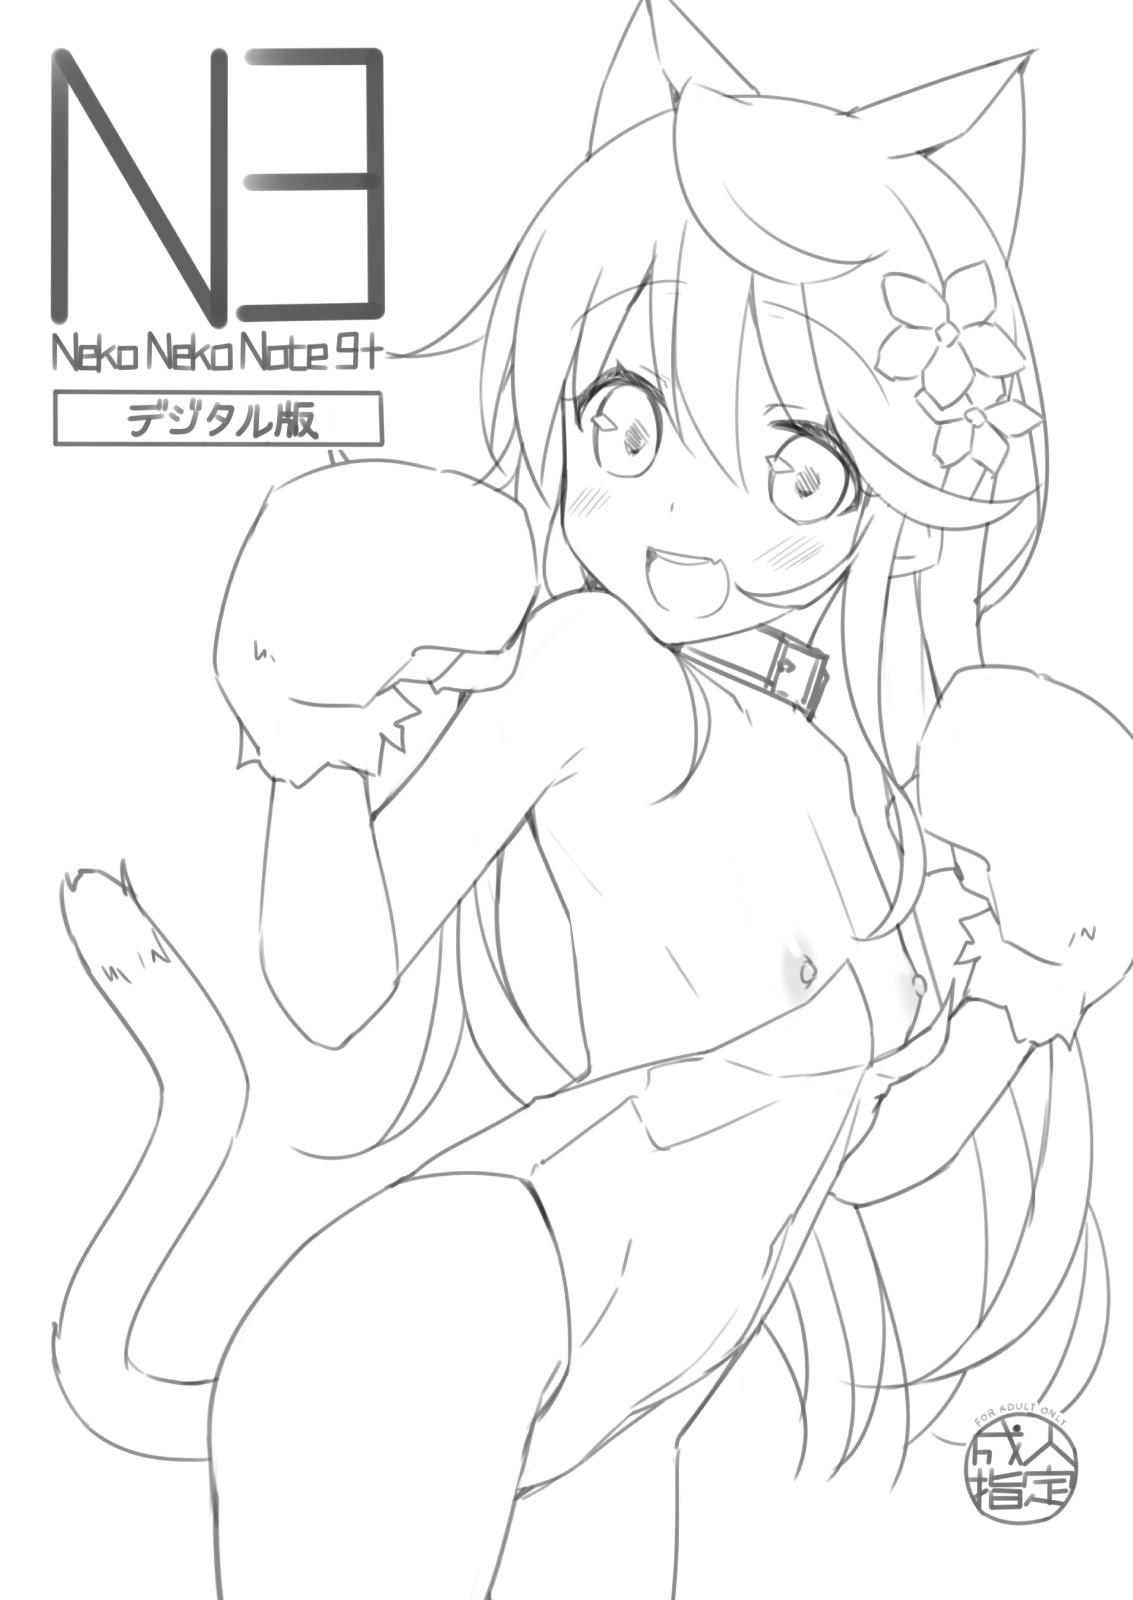 Neko Neko Note 9+ 0